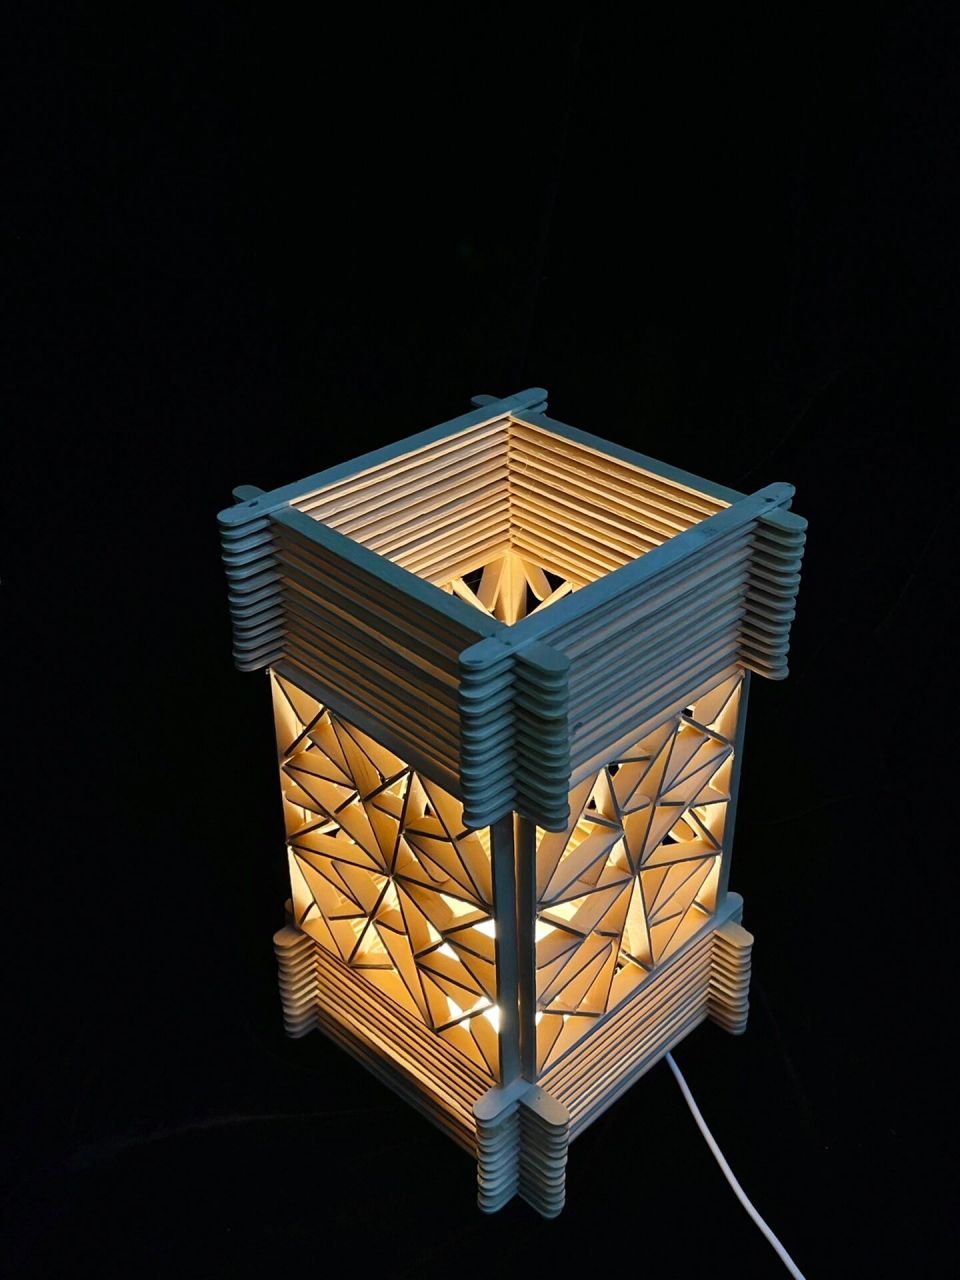 灯具作业 立体构成 灯具设计 手工制作